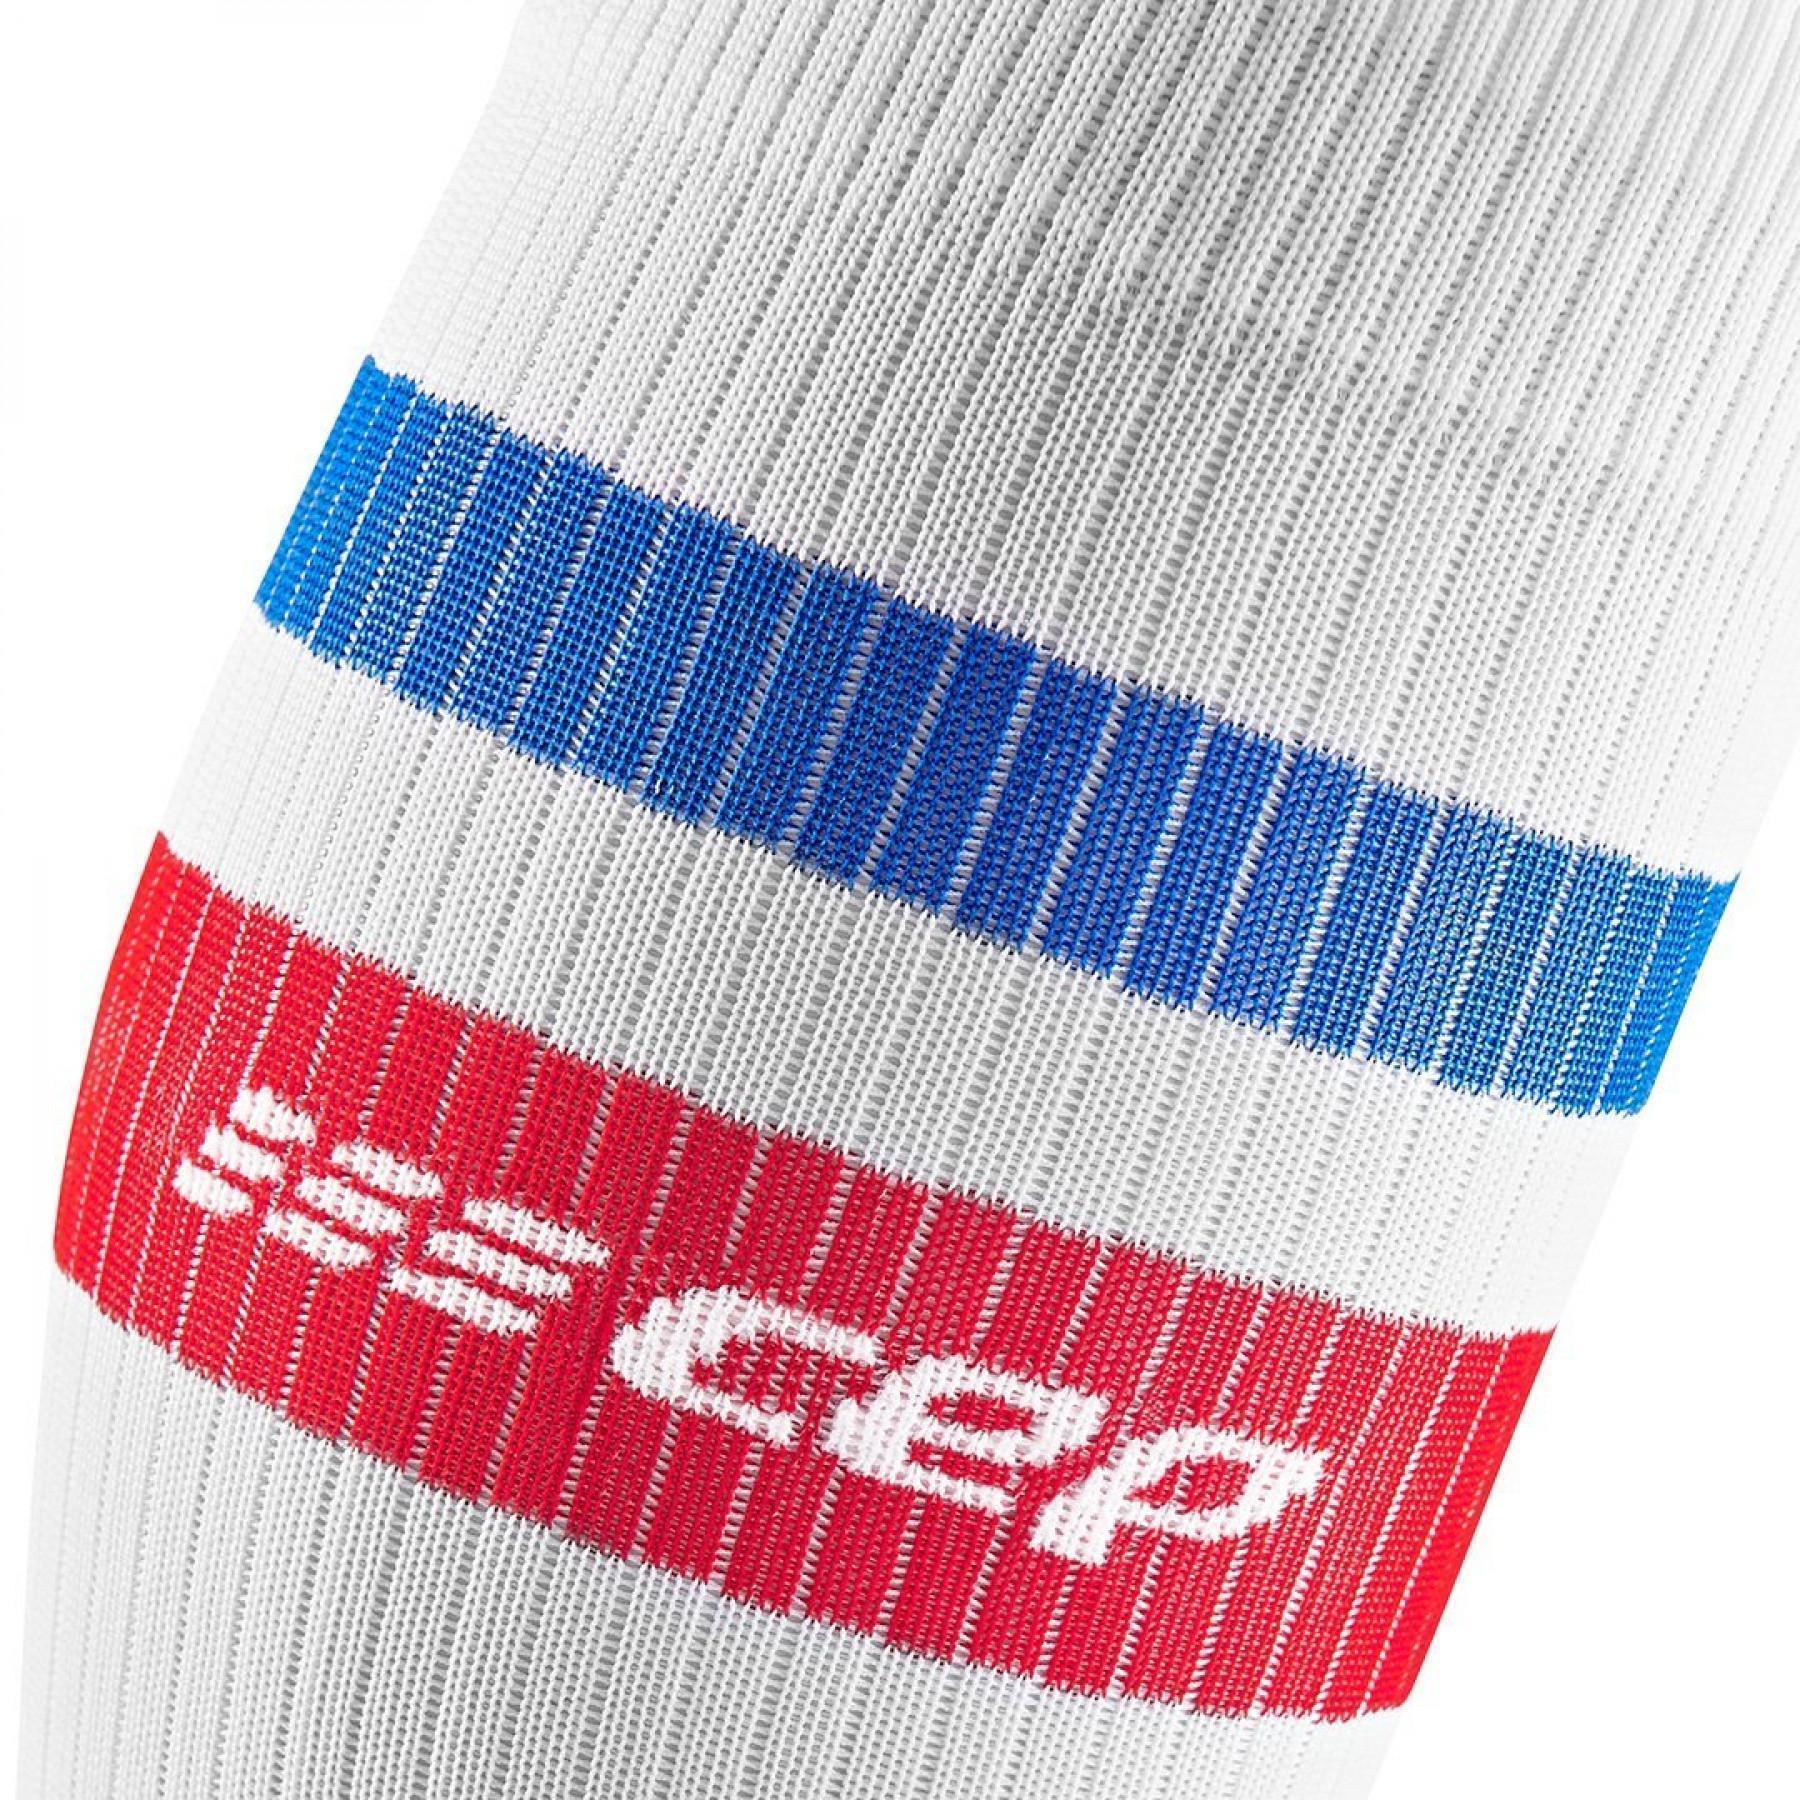 High compression socks CEP Compression 80's